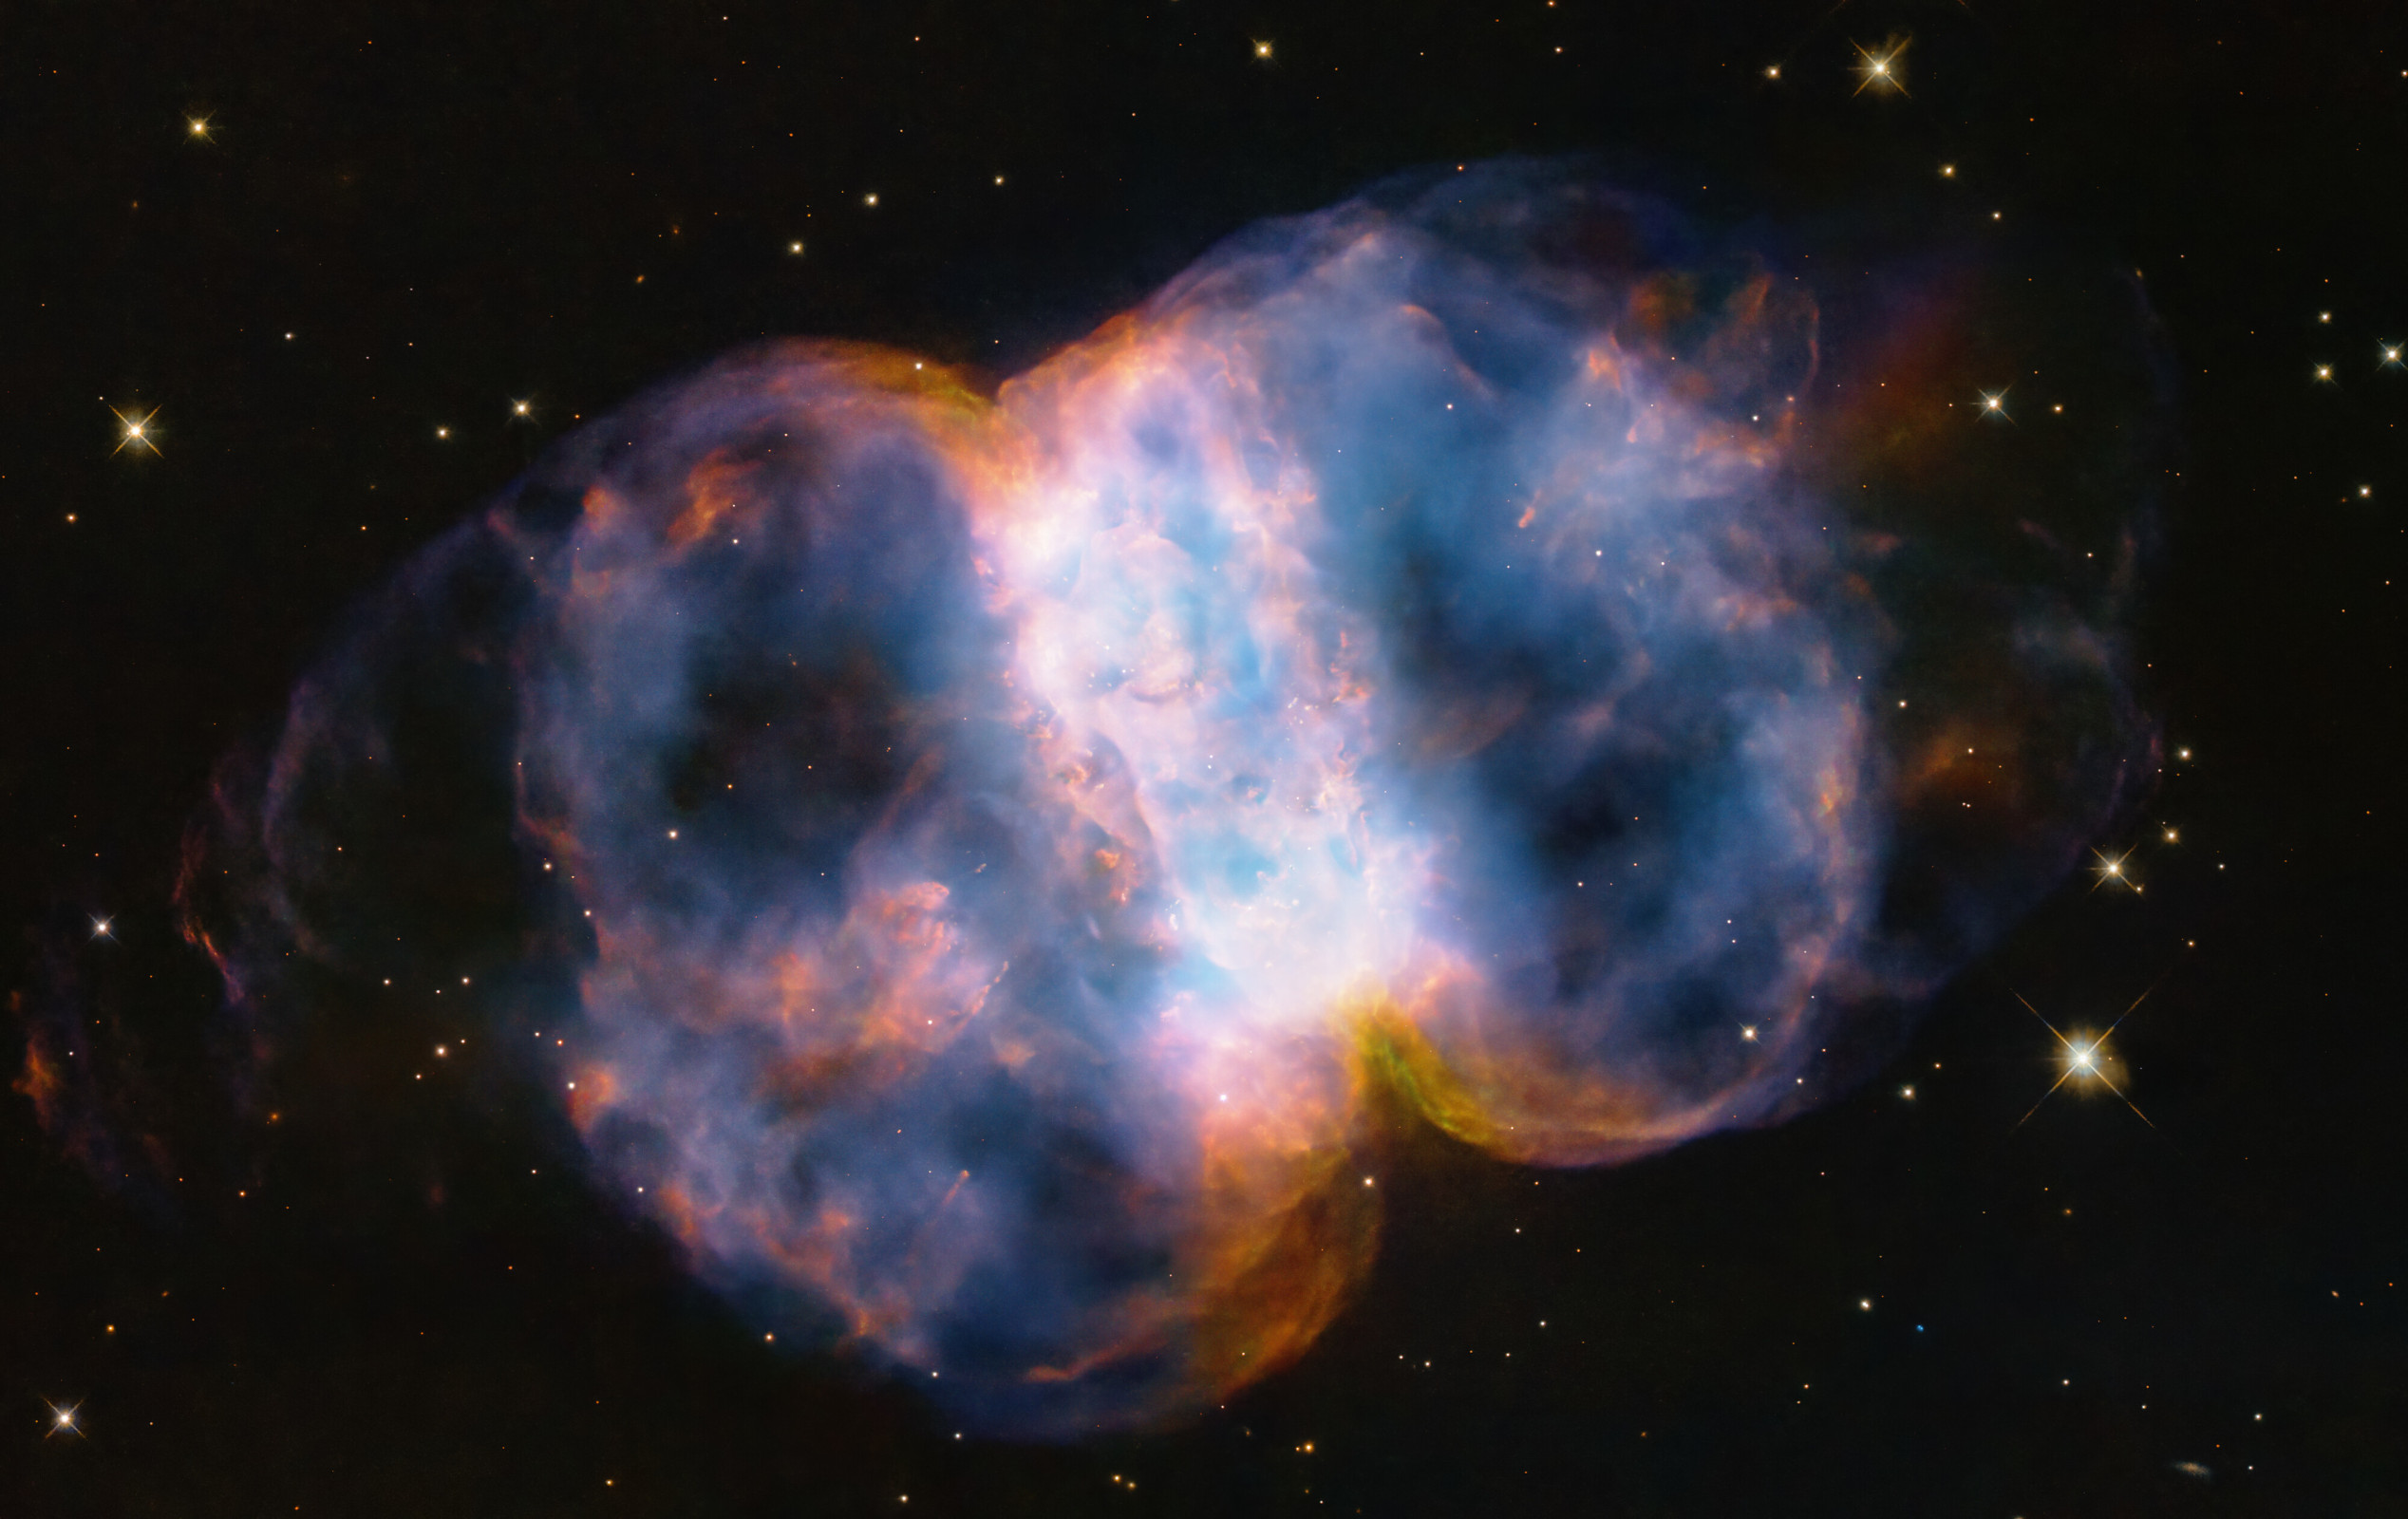 Το τηλεσκόπιο Hubble γιορτάζει τα 34 χρόνια του με μια εντυπωσιακή εικόνα του νεφελώματος Messier